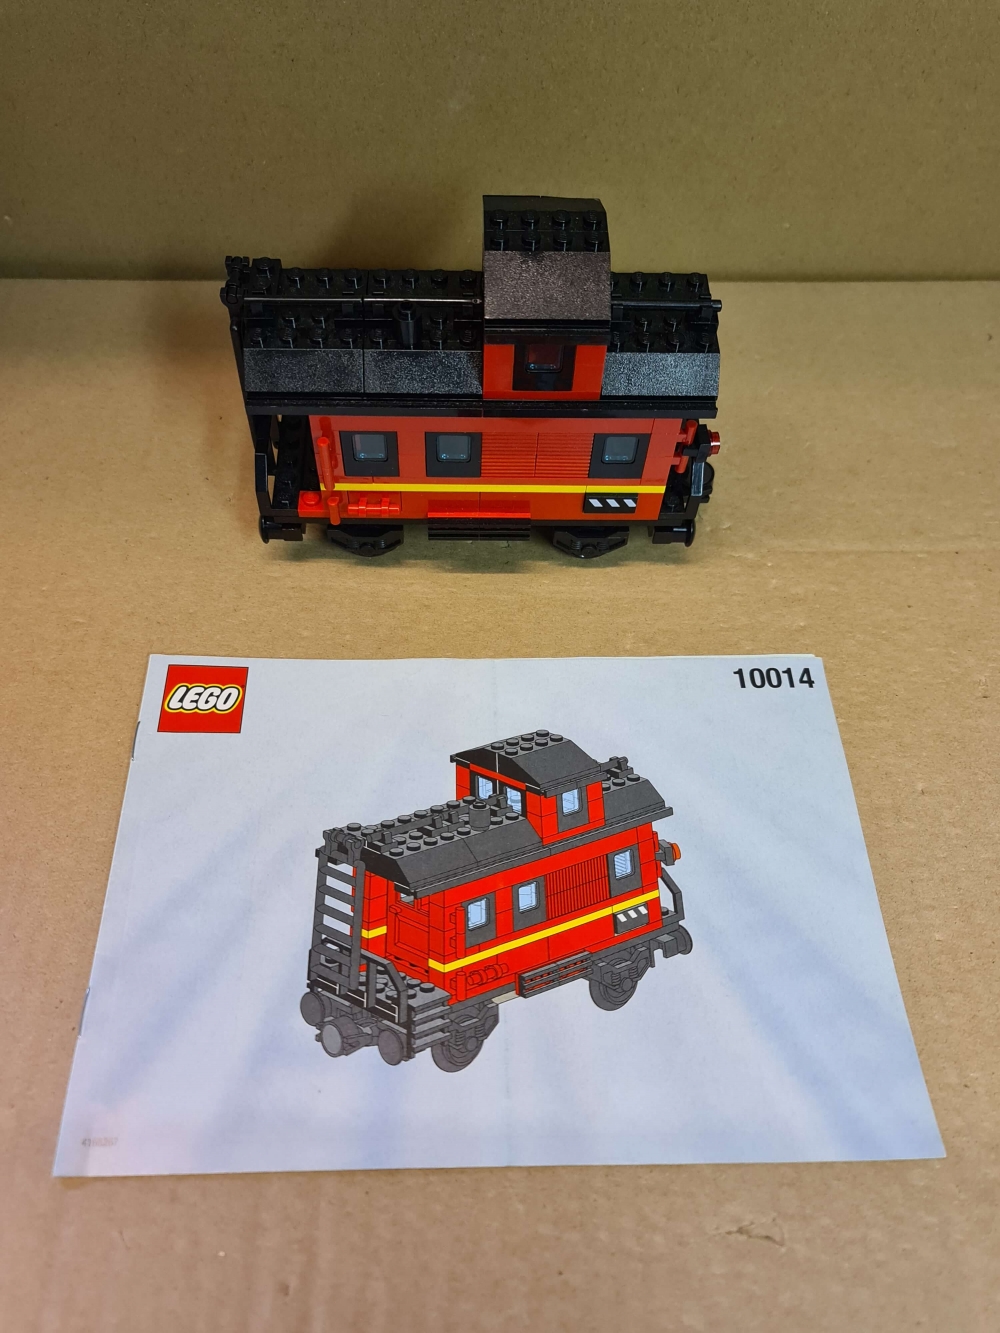 Sett 10014 fra Lego Train : 9V : My Own Train serien.
Meget pent. 
Komplett med manual.